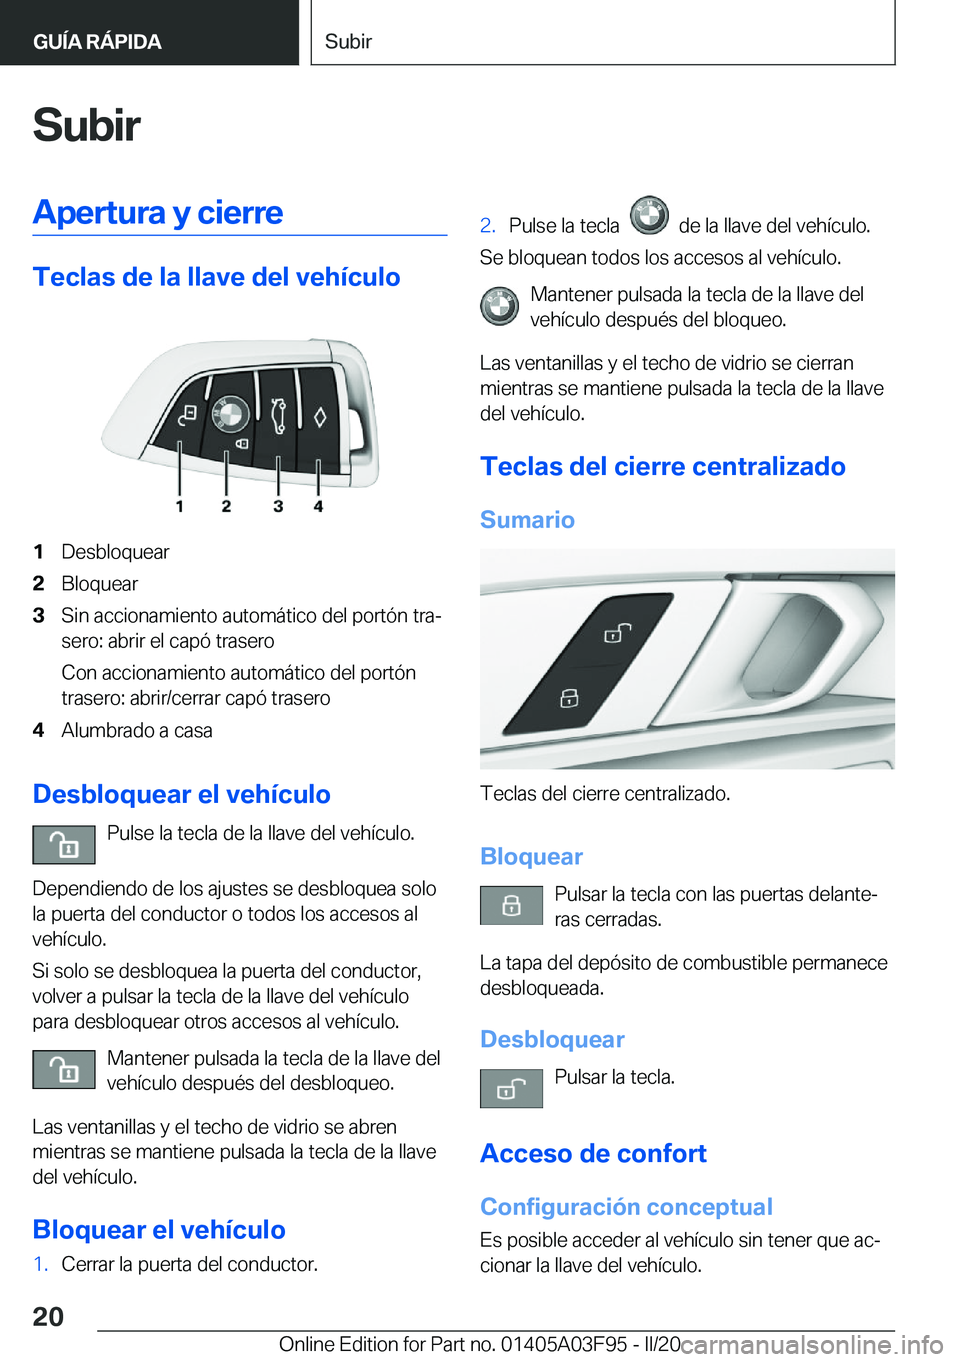 BMW 3 SERIES 2020  Manuales de Empleo (in Spanish) �S�u�b�i�r�A�p�e�r�t�u�r�a��y��c�i�e�r�r�e
�T�e�c�l�a�s��d�e��l�a��l�l�a�v�e��d�e�l��v�e�h�